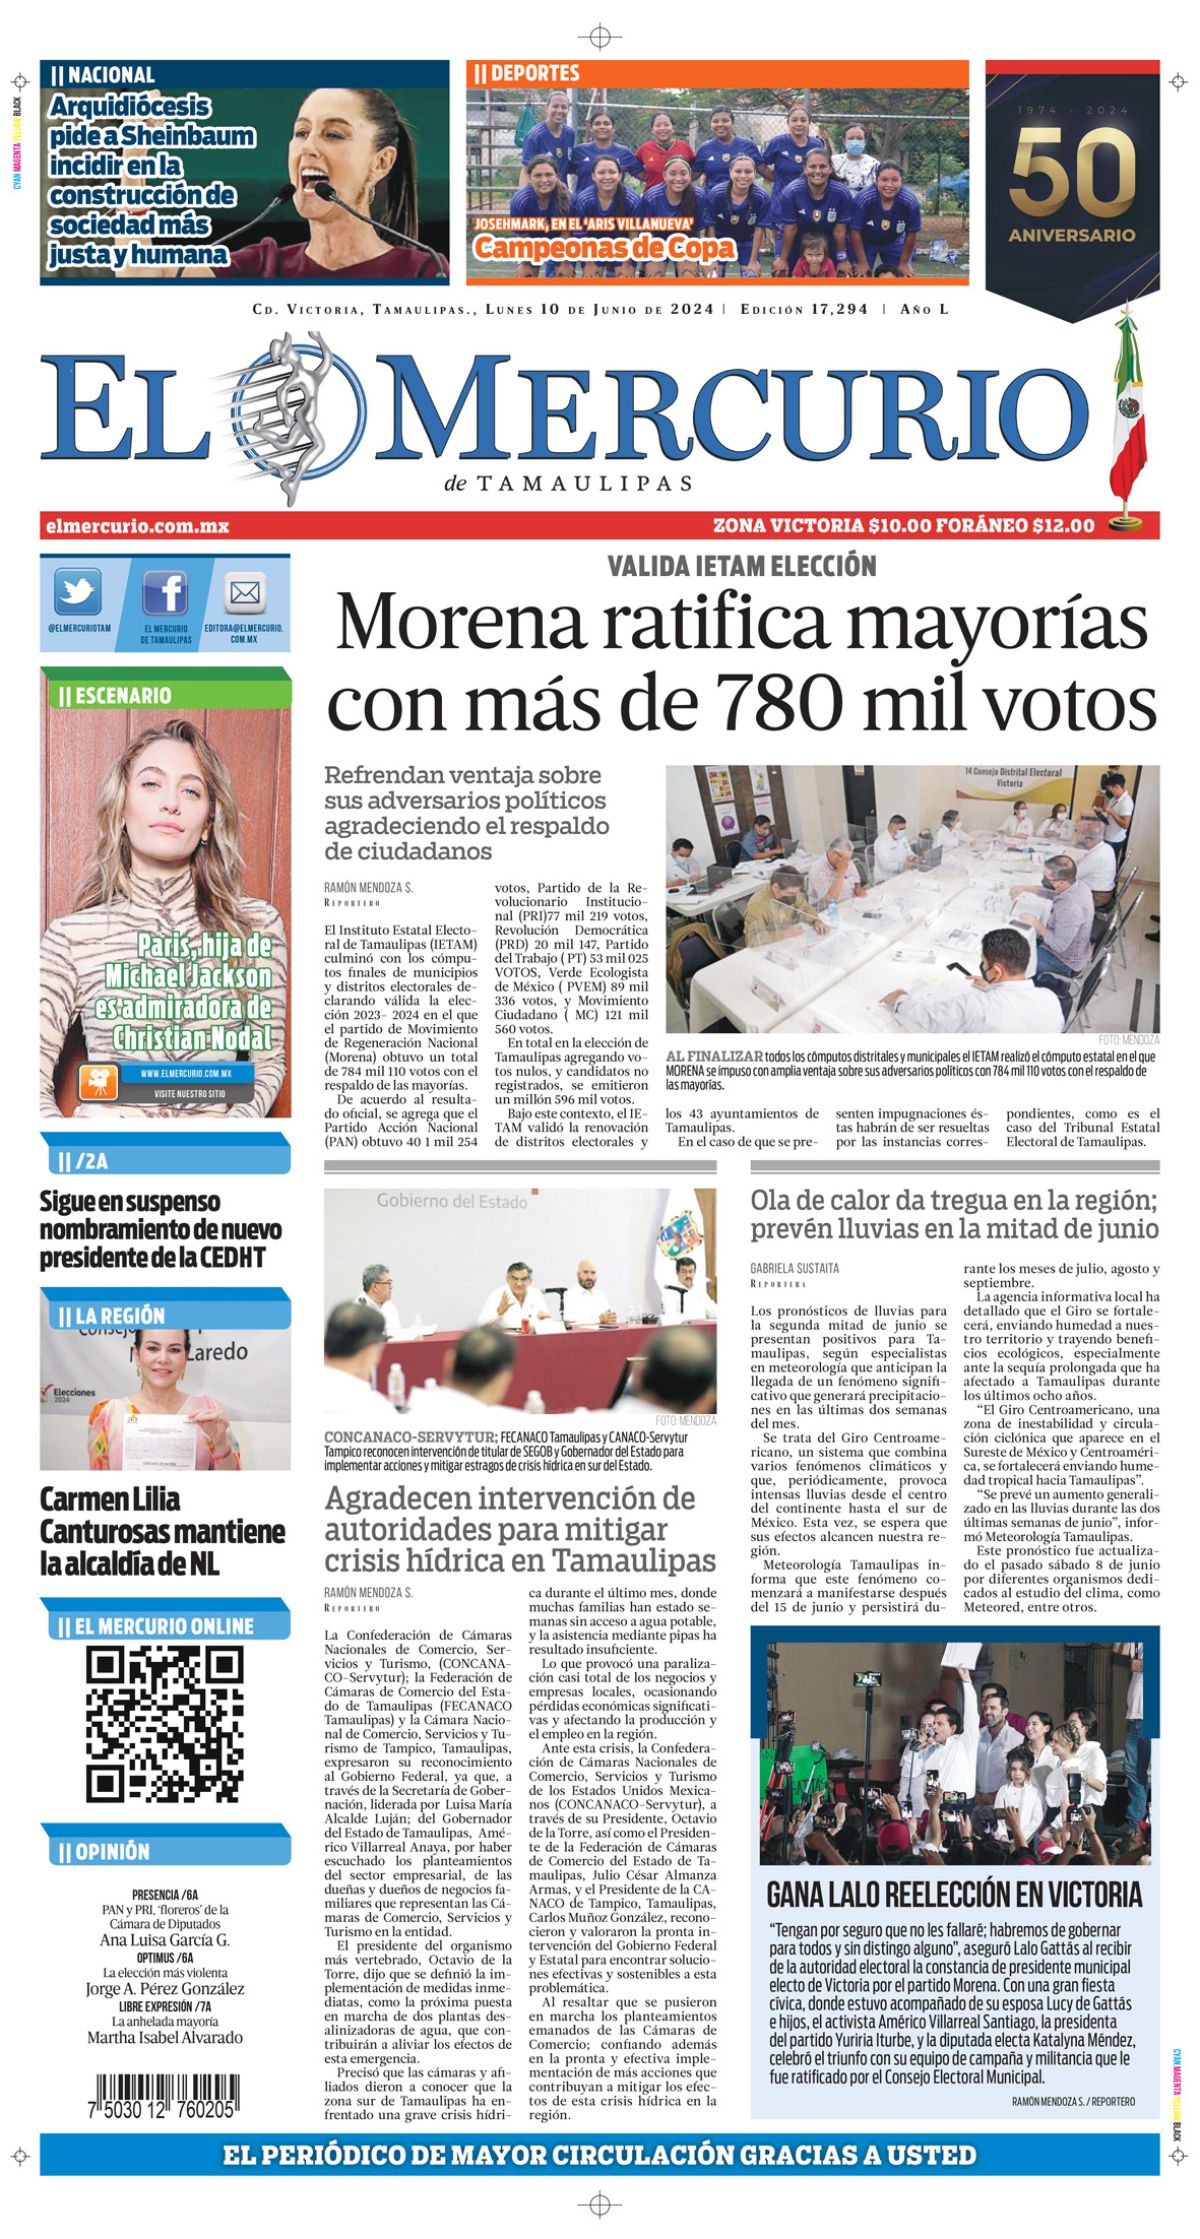 Morena ratifica mayorías con más de 780 mil votos 